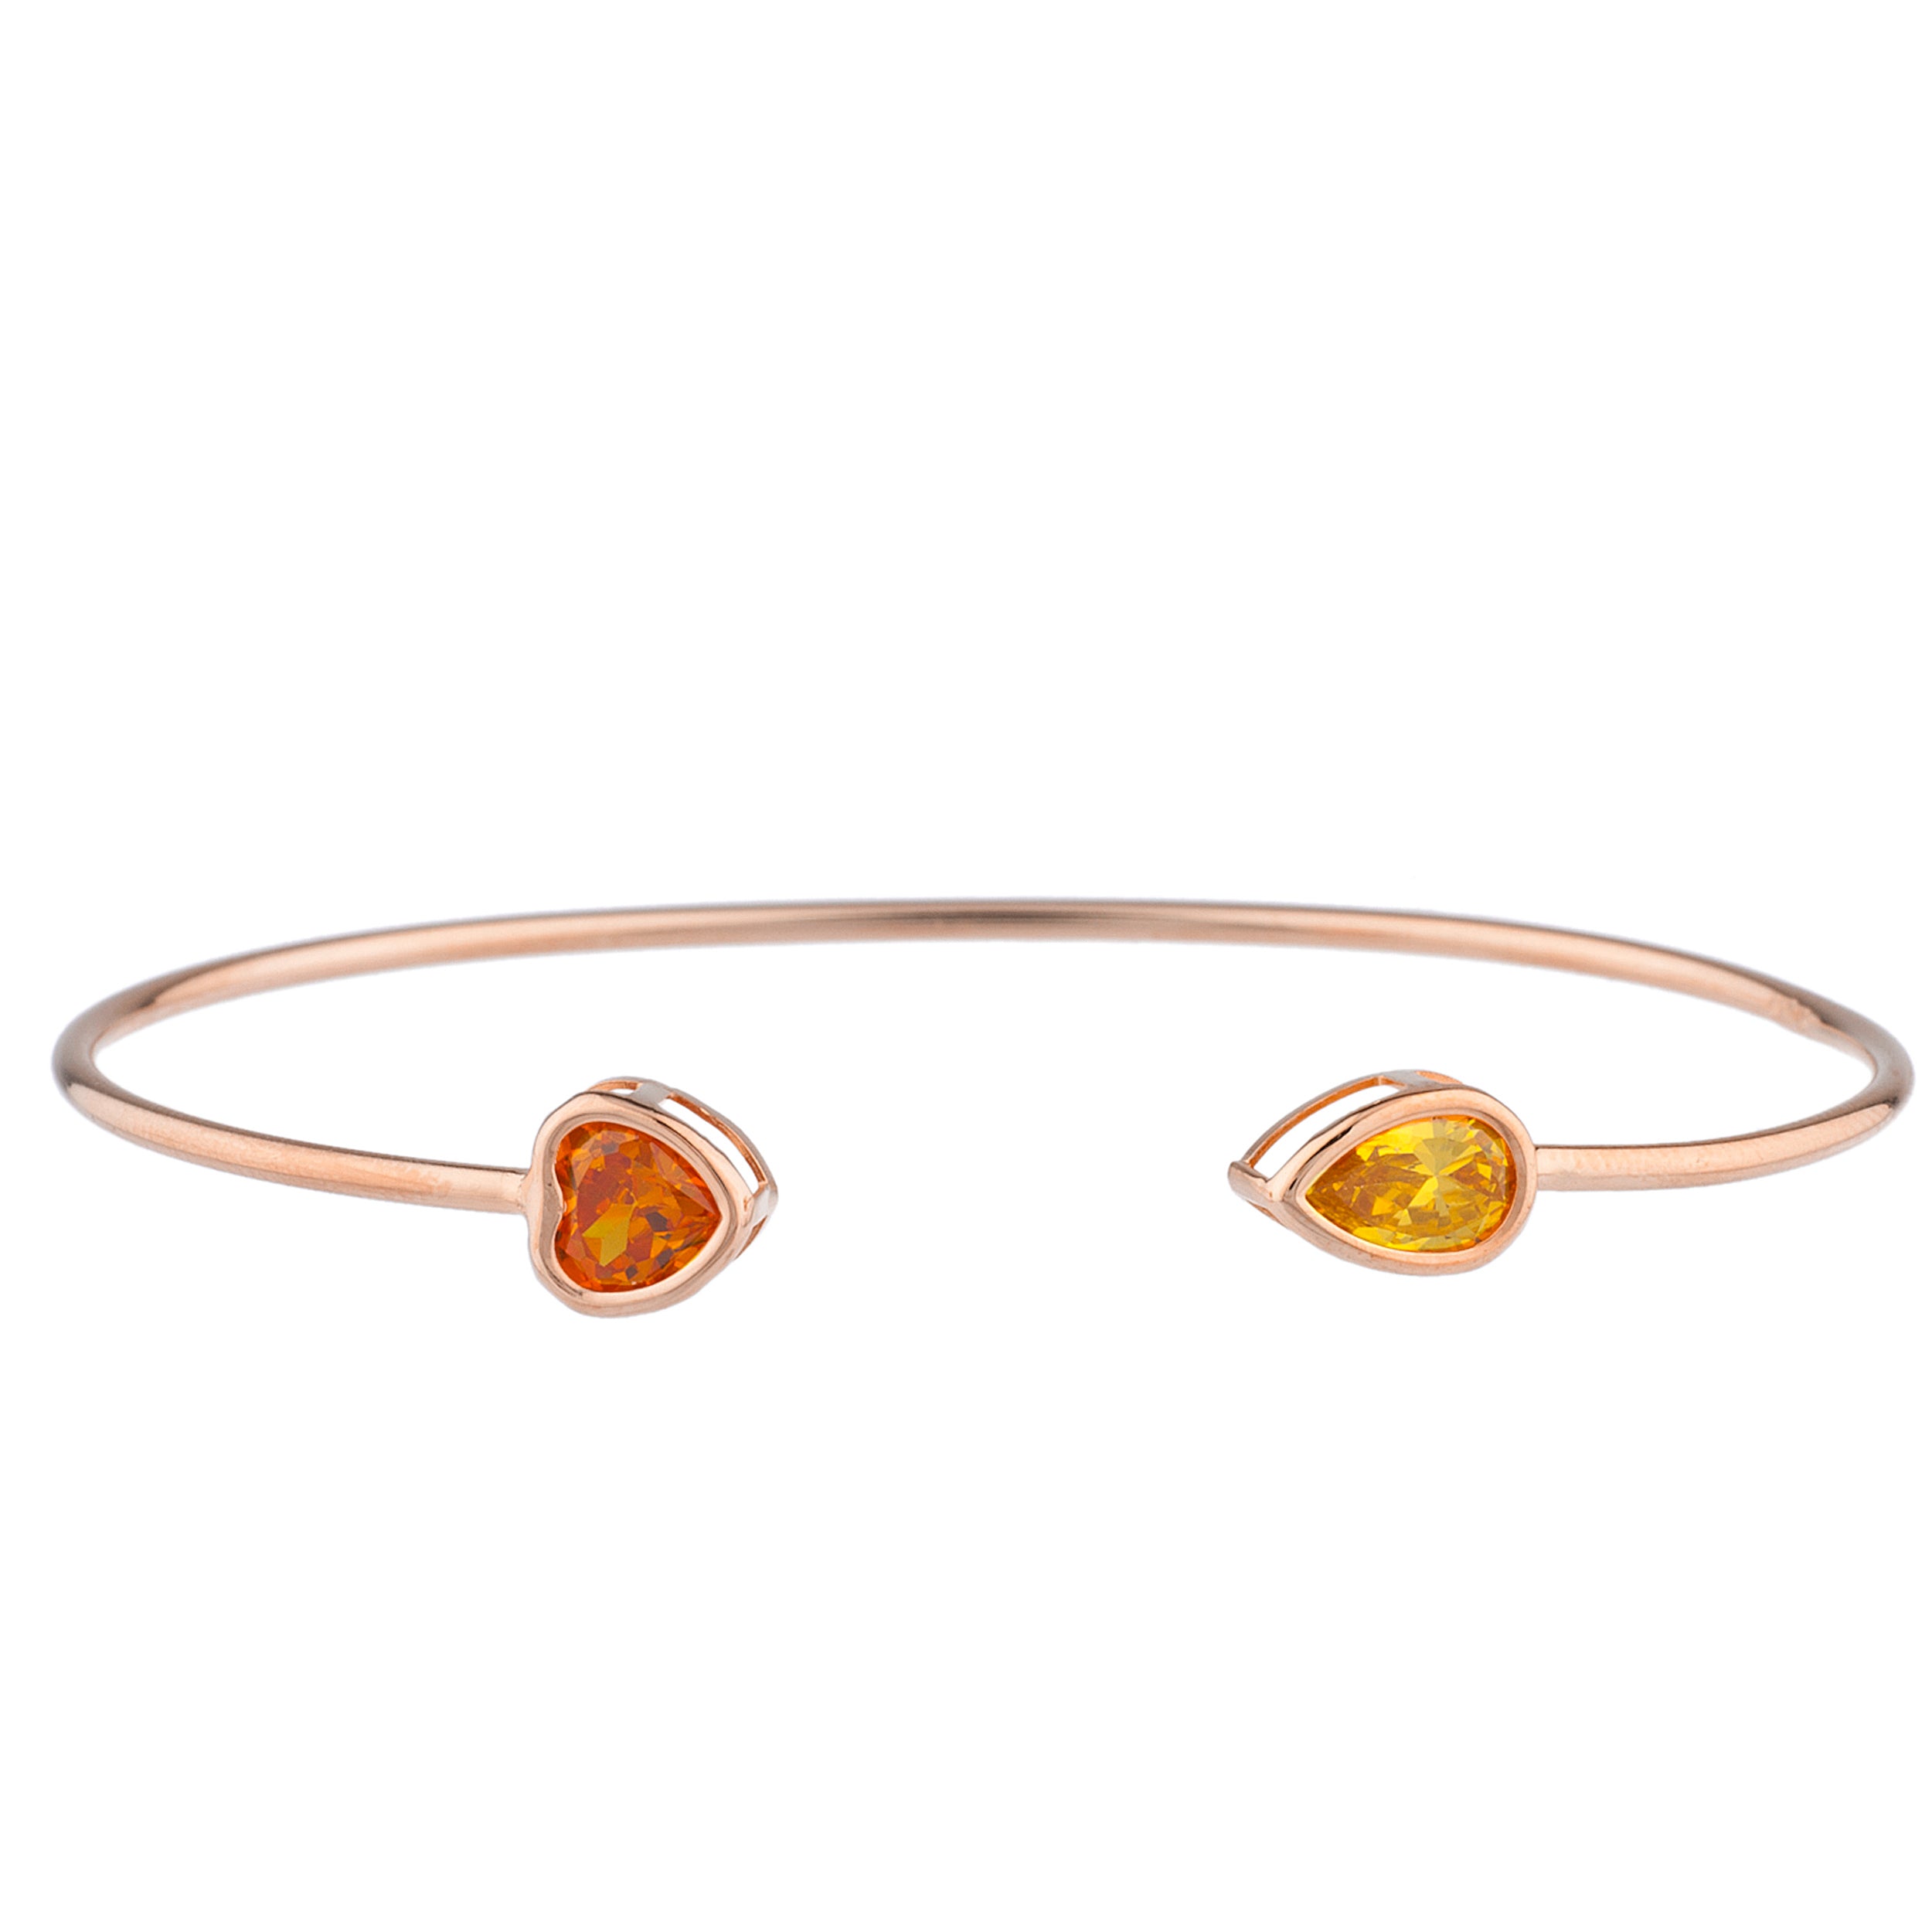 14Kt Gold Orange Citrine Heart & Yellow Citrine Pear Bezel Bangle Bracelet